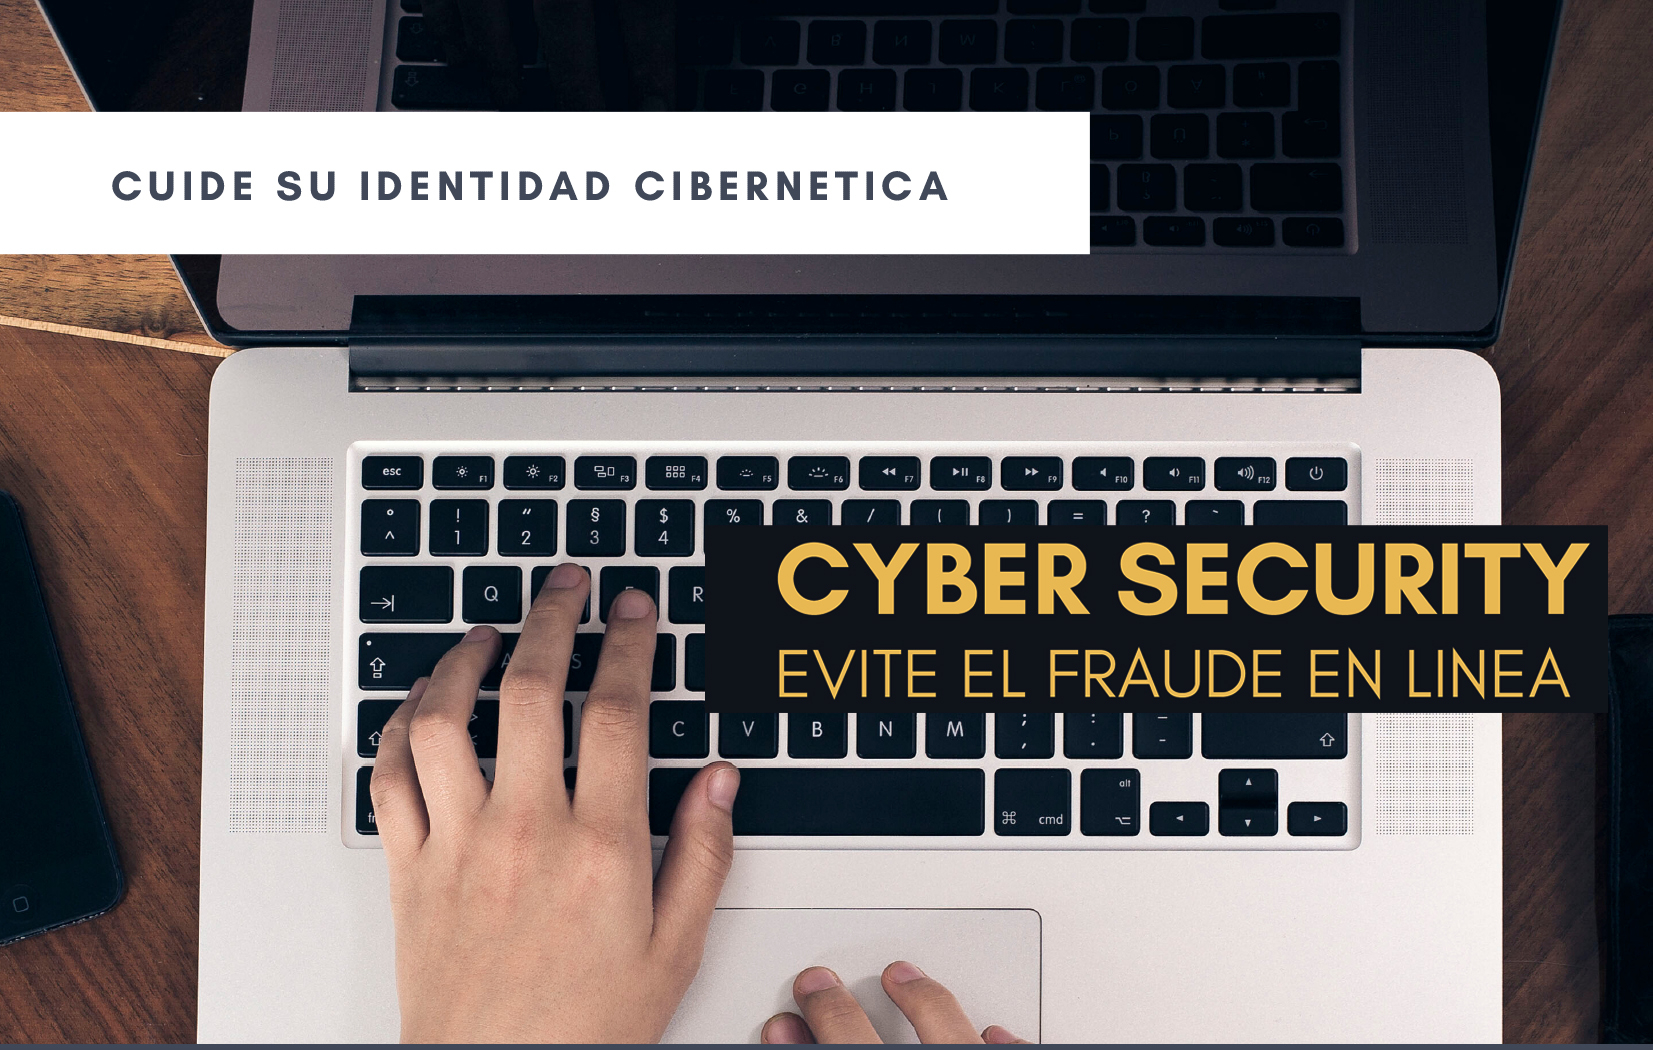 thumbnails Cyber security Alerts - Evite el fraude en linea